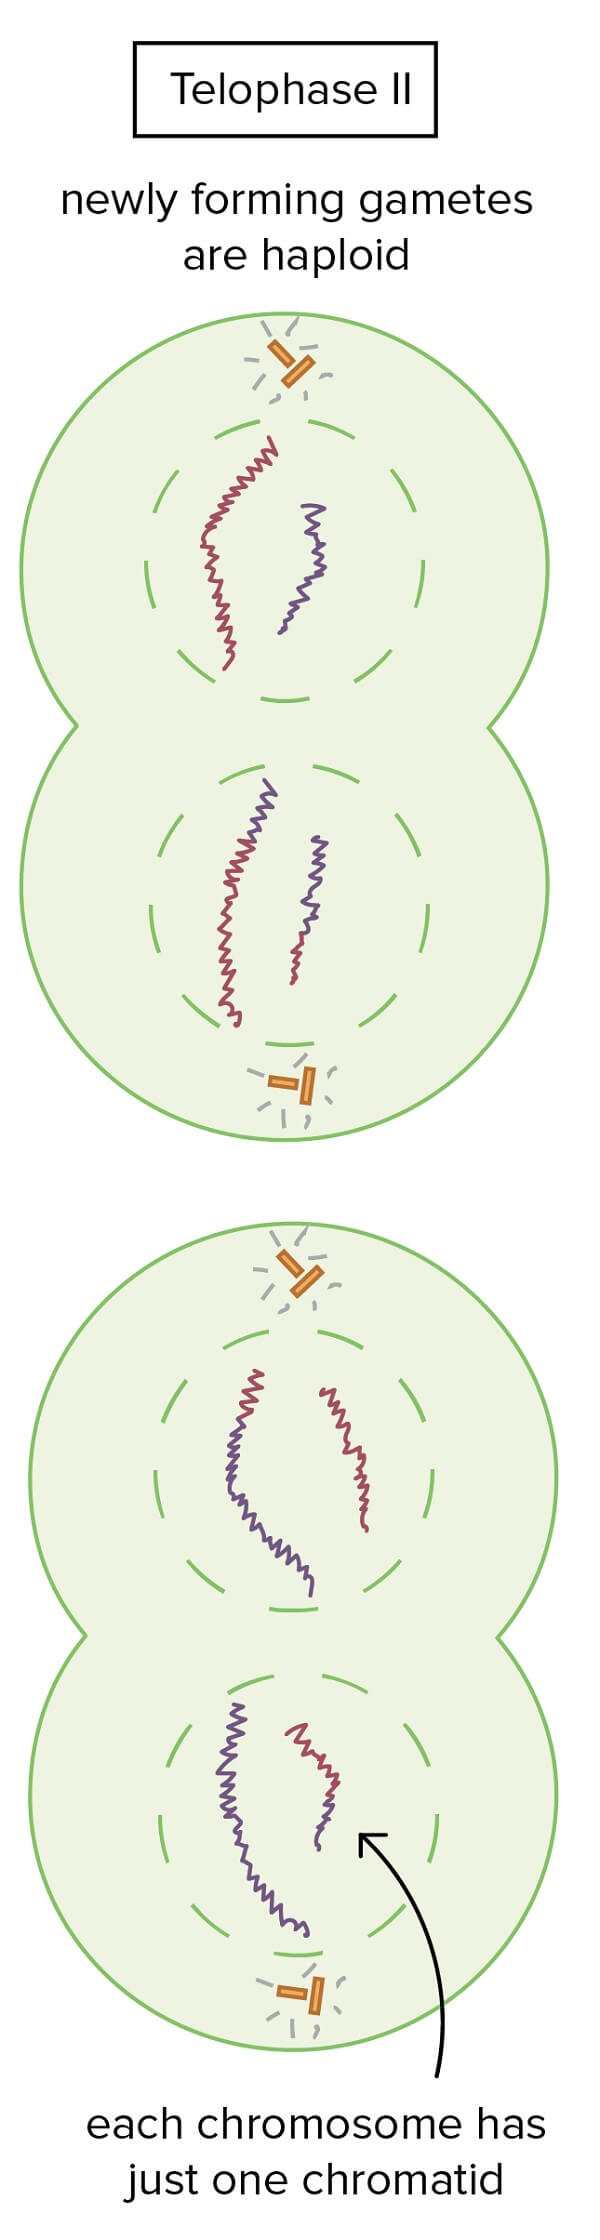 Telophase II in meiosis